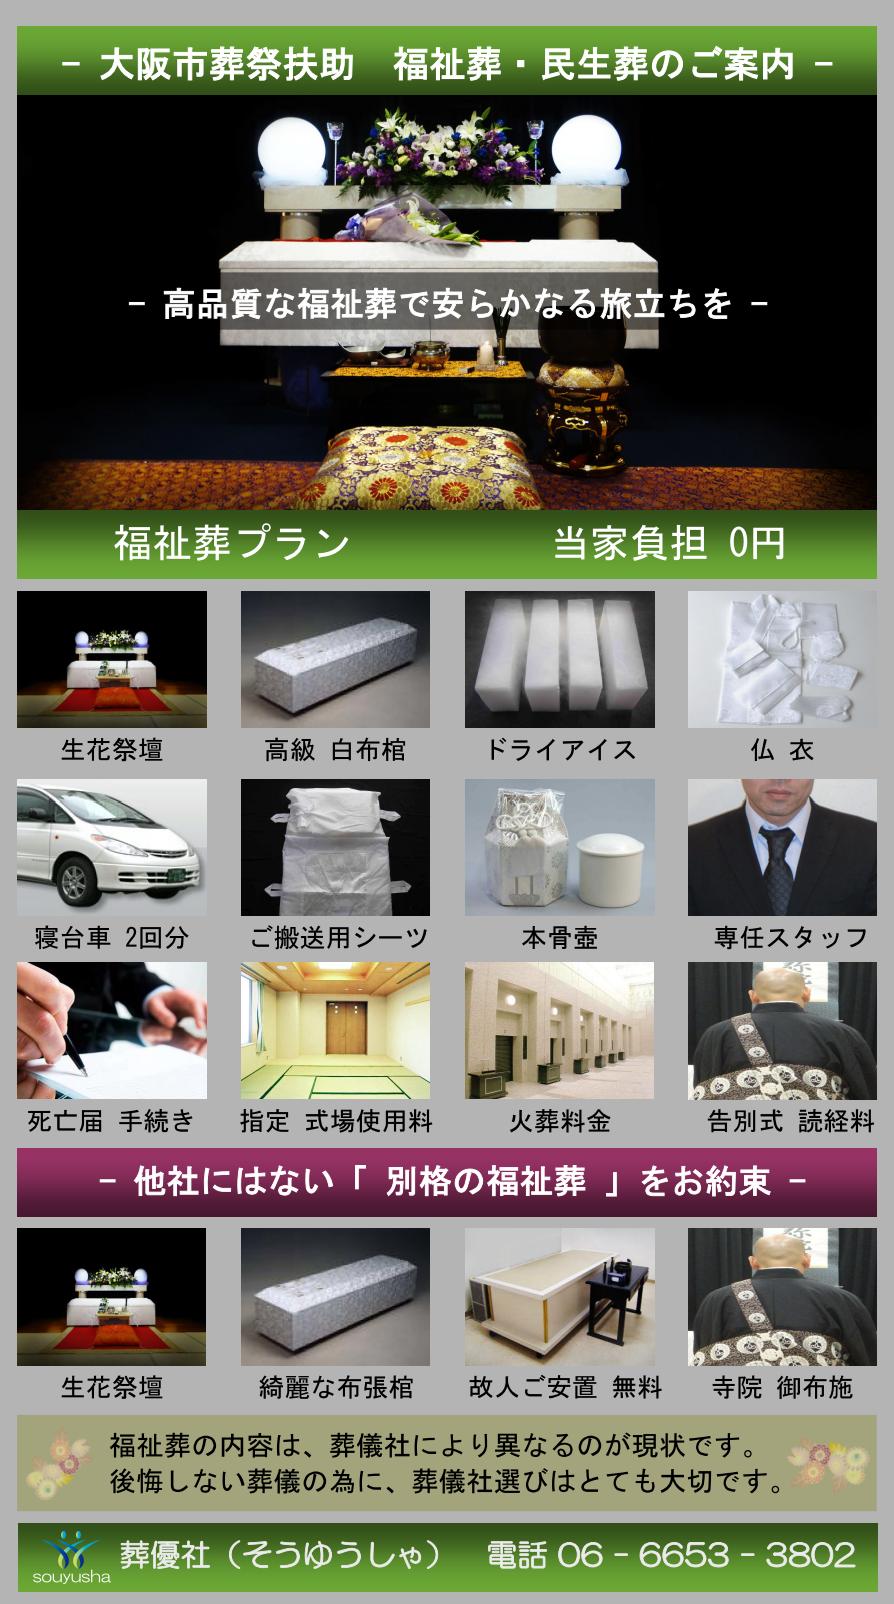 大阪市 西成区での福祉葬、生活保護者のお葬式のご案内